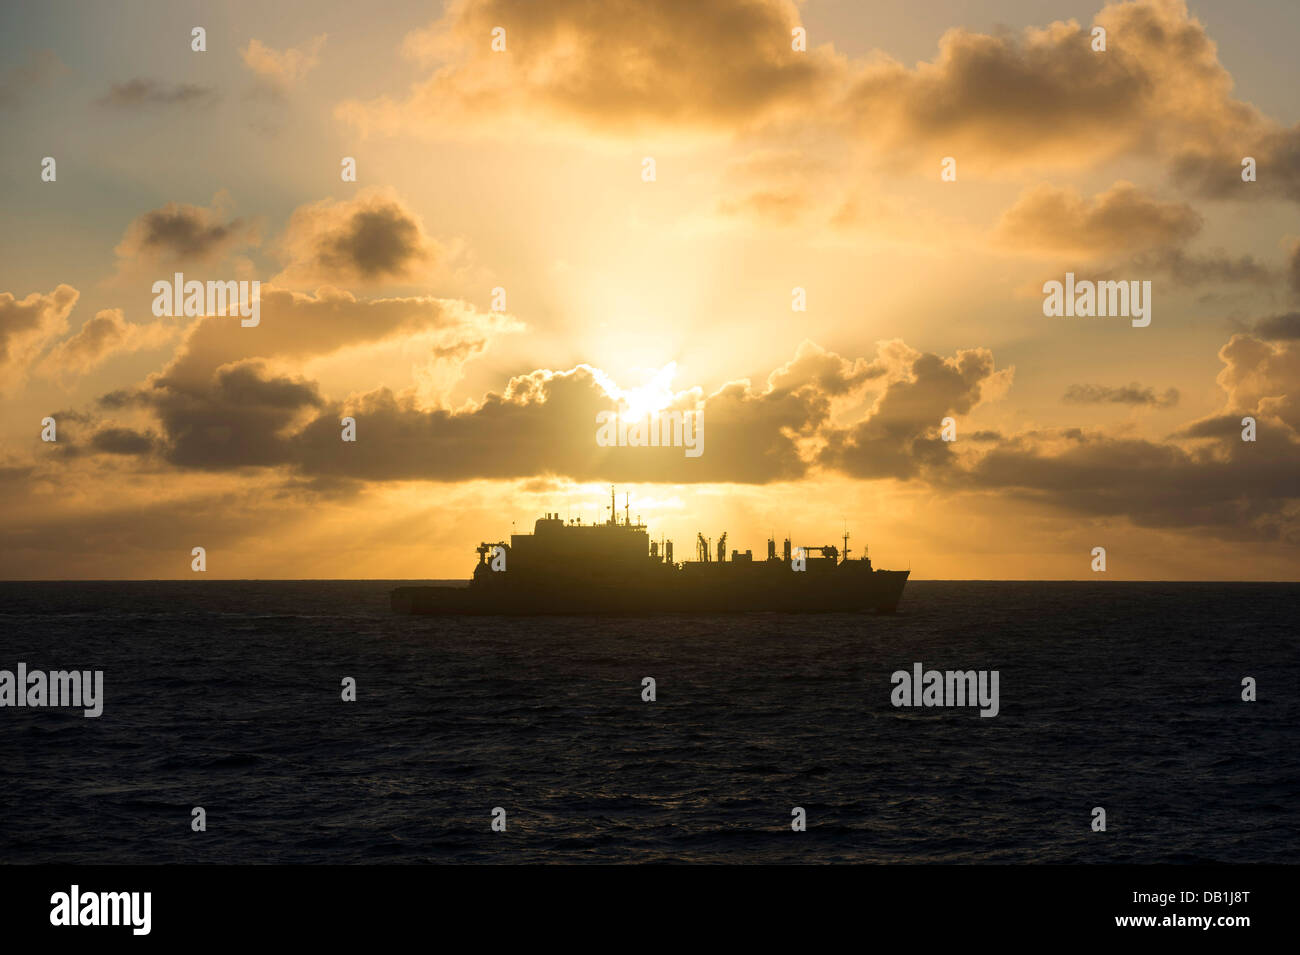 Militares del comando de transporte marítimo de carga seca/municiones buque USNS Charles Drew (T-AKE 10) llega a la posición de una mañana temprana volver Foto de stock